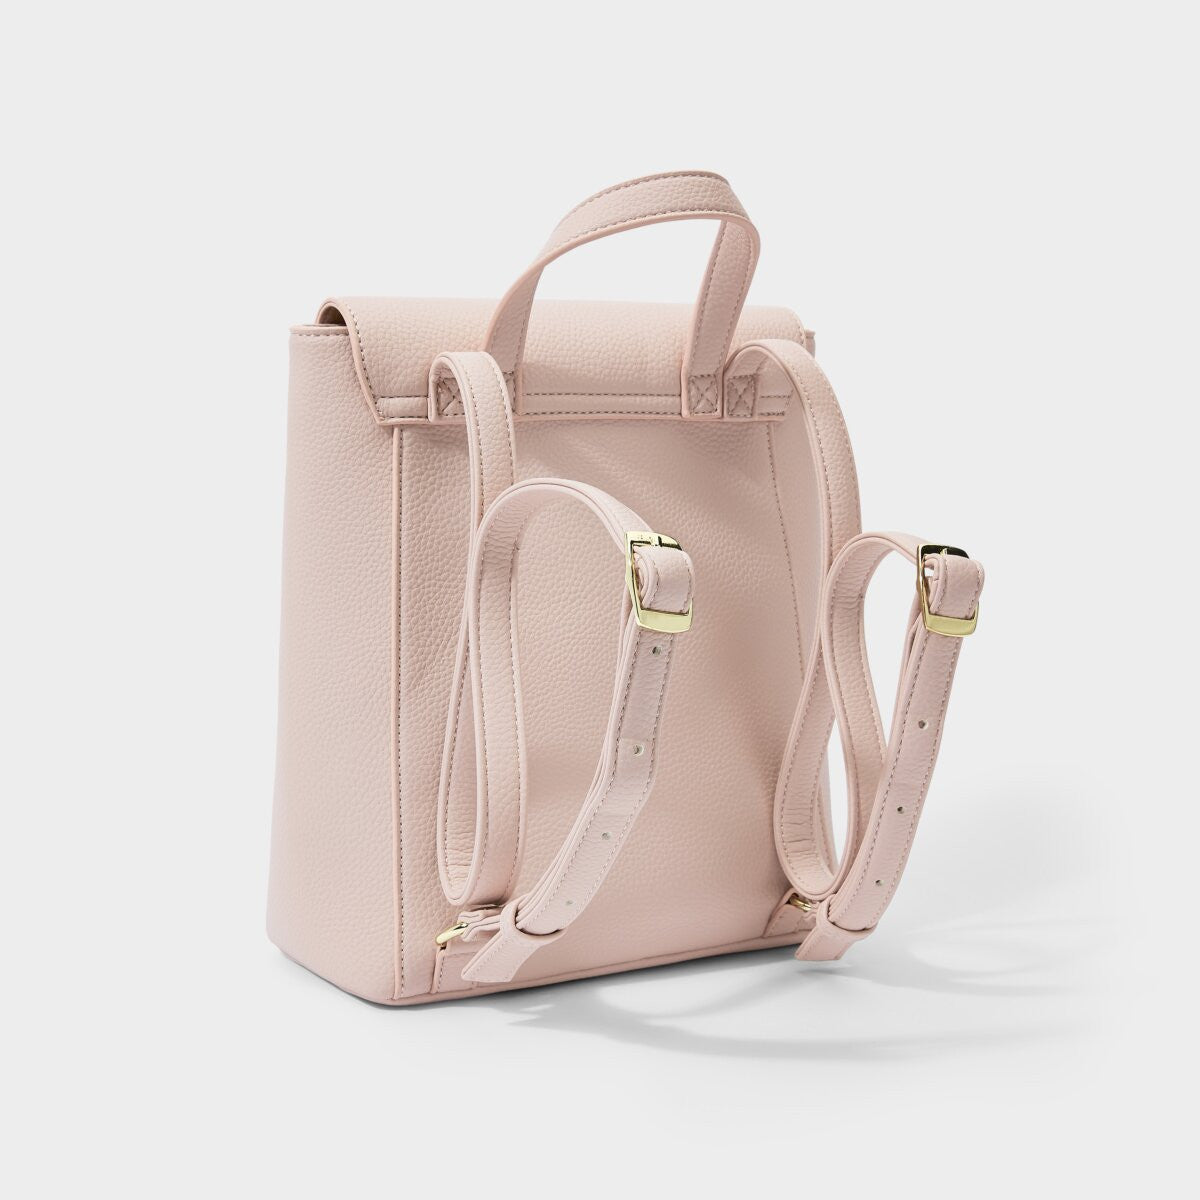 Dani Tortoiseshell Backpack in Dusty Pink